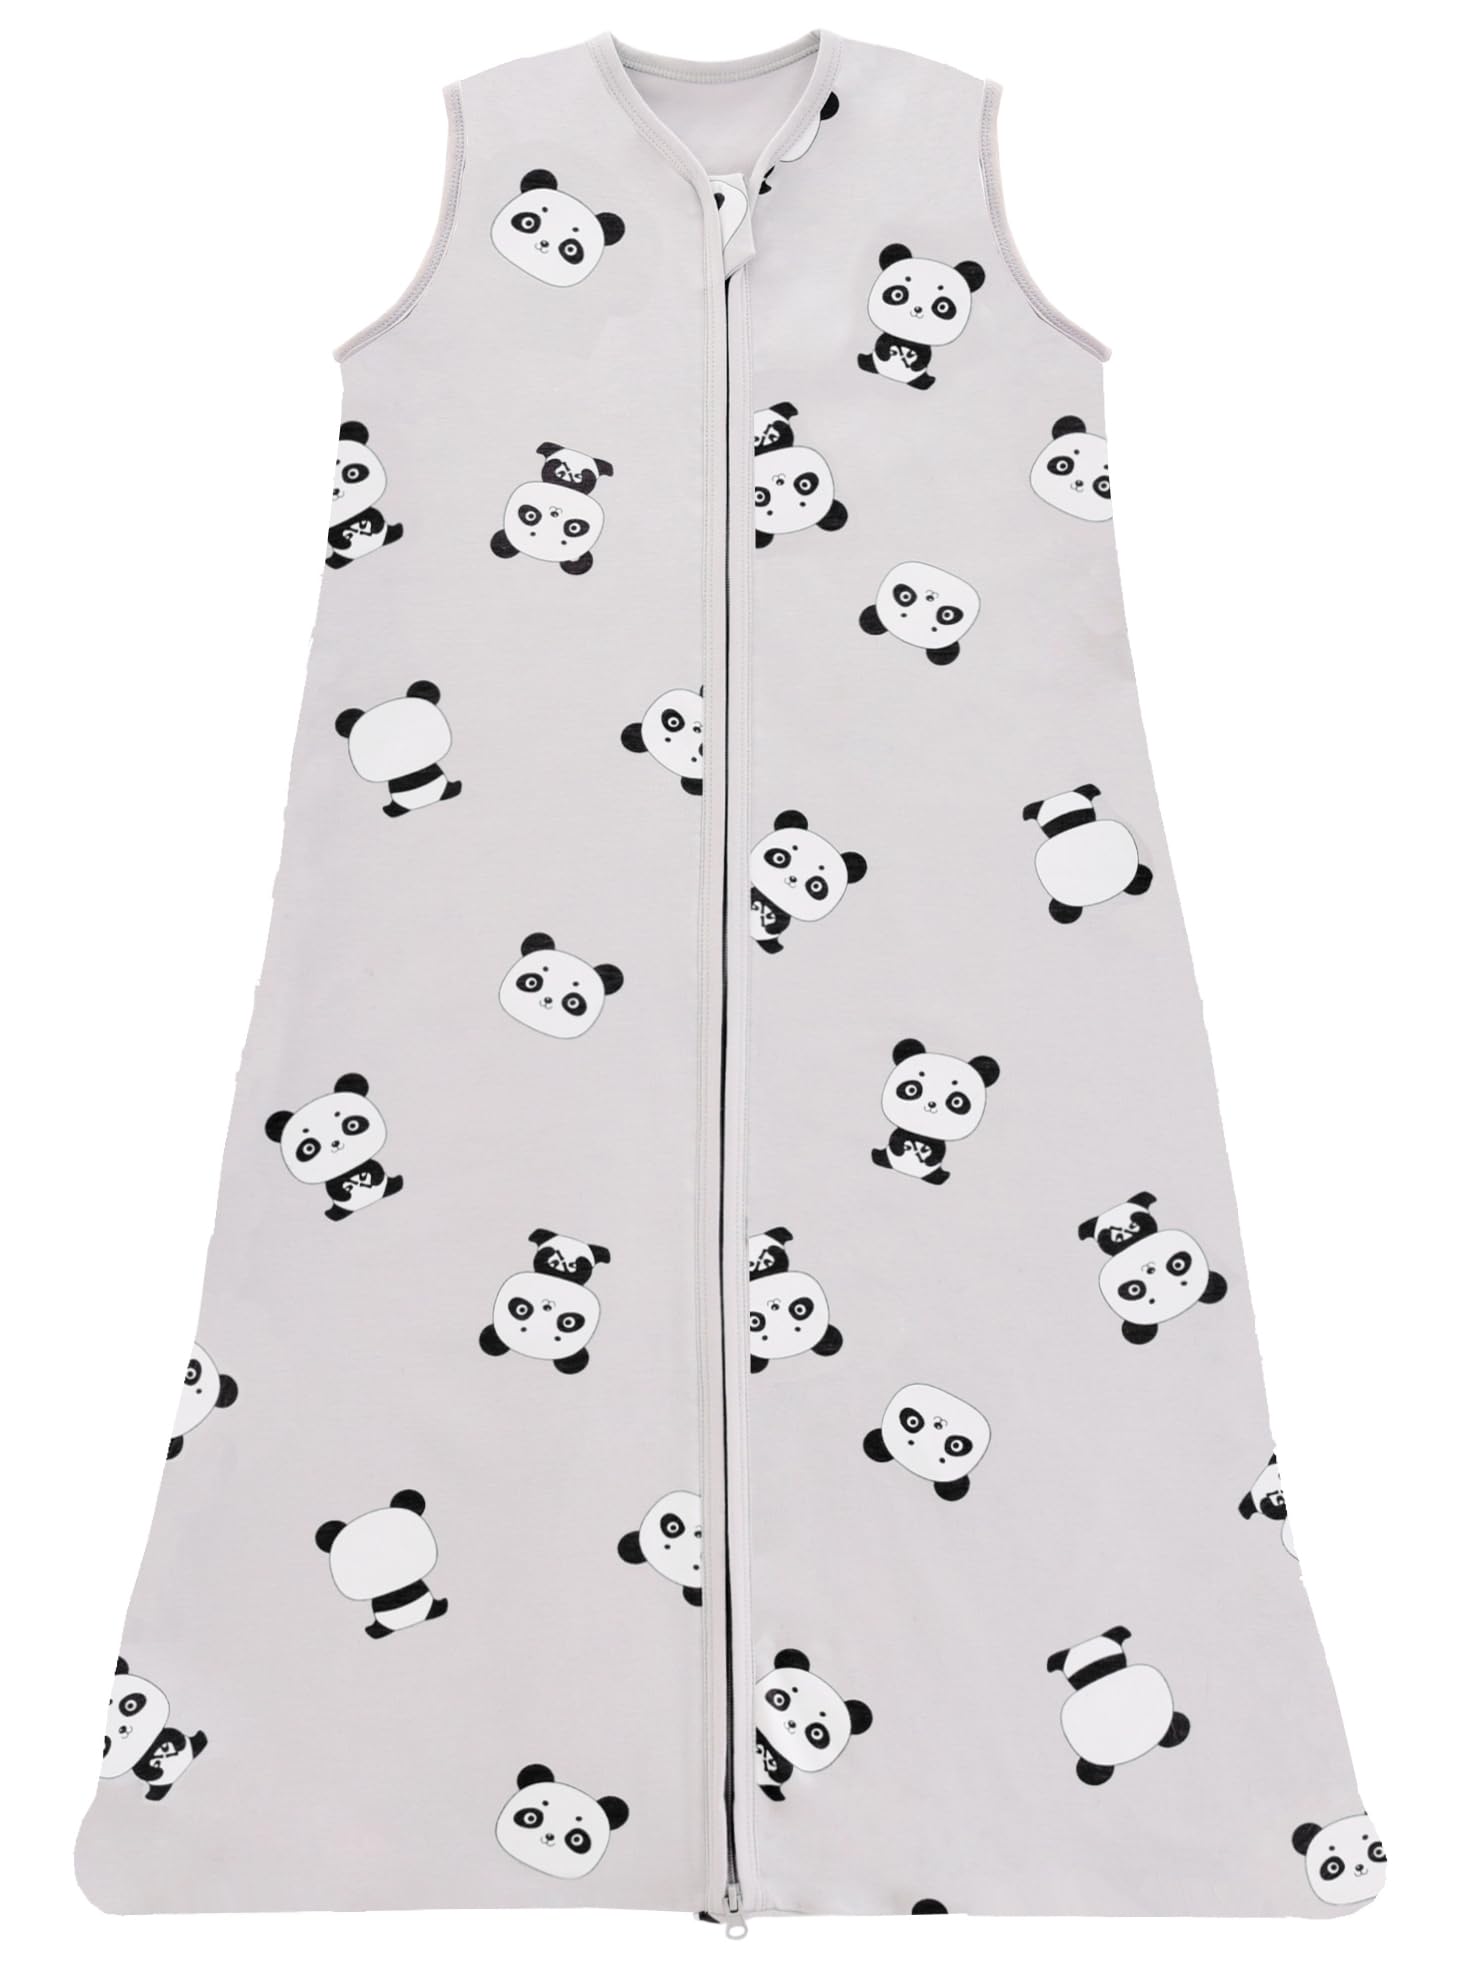 Haute Qualité Chilsuessy Gigoteuse Bébé Pyjama d´été sans Manches 100% Coton Tog 0.5 Sac de Couchage d´été pour bébé, Panda Mignon, 90-105 cm g9SjHX1aT Boutique